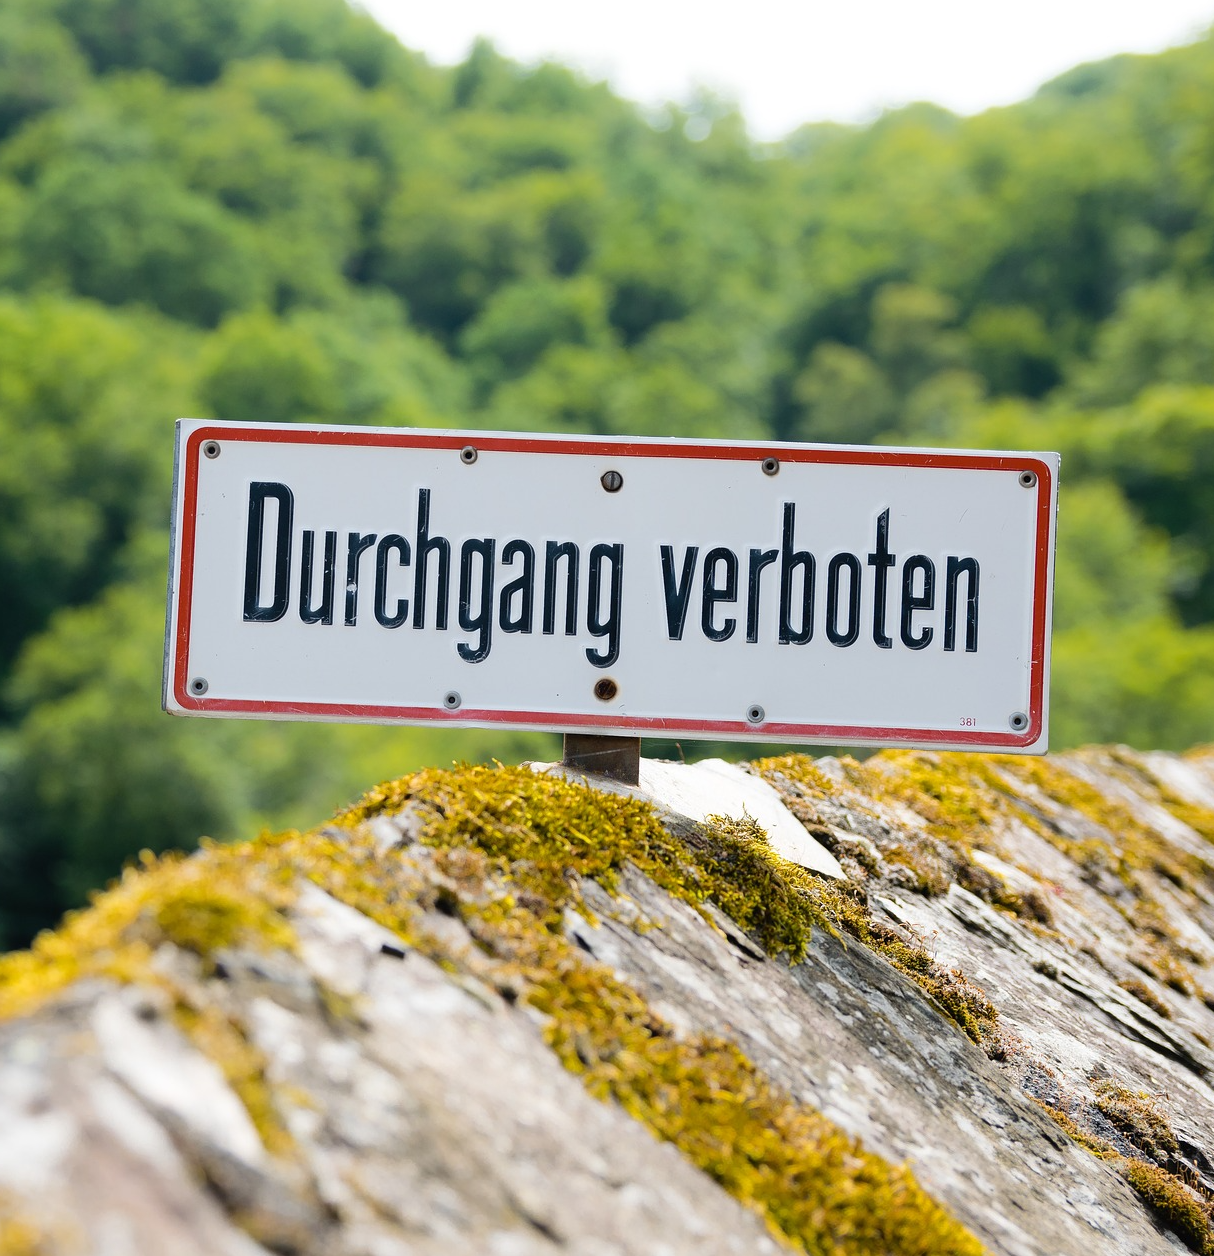 Landschaft mit Verbotsschild "Durchgang verboten"